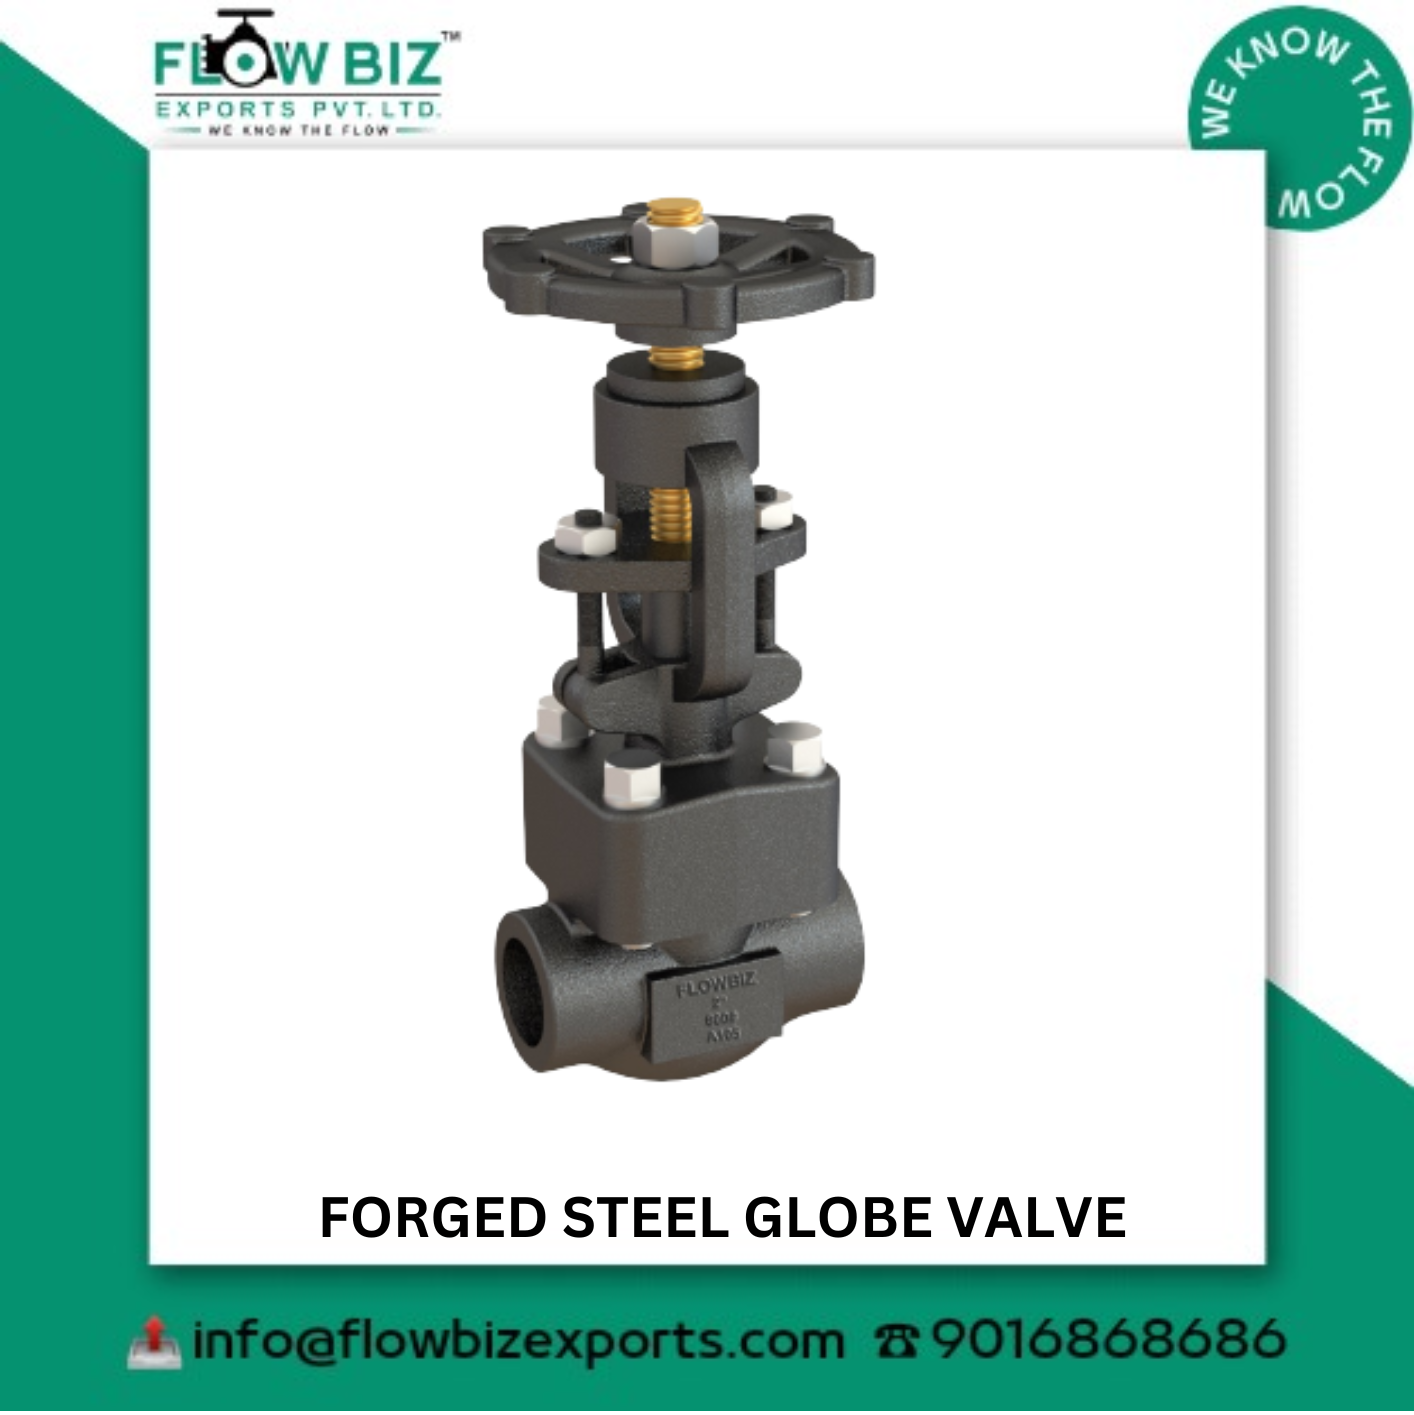 forged steel globe valve manufacturer pune  - Flowbiz